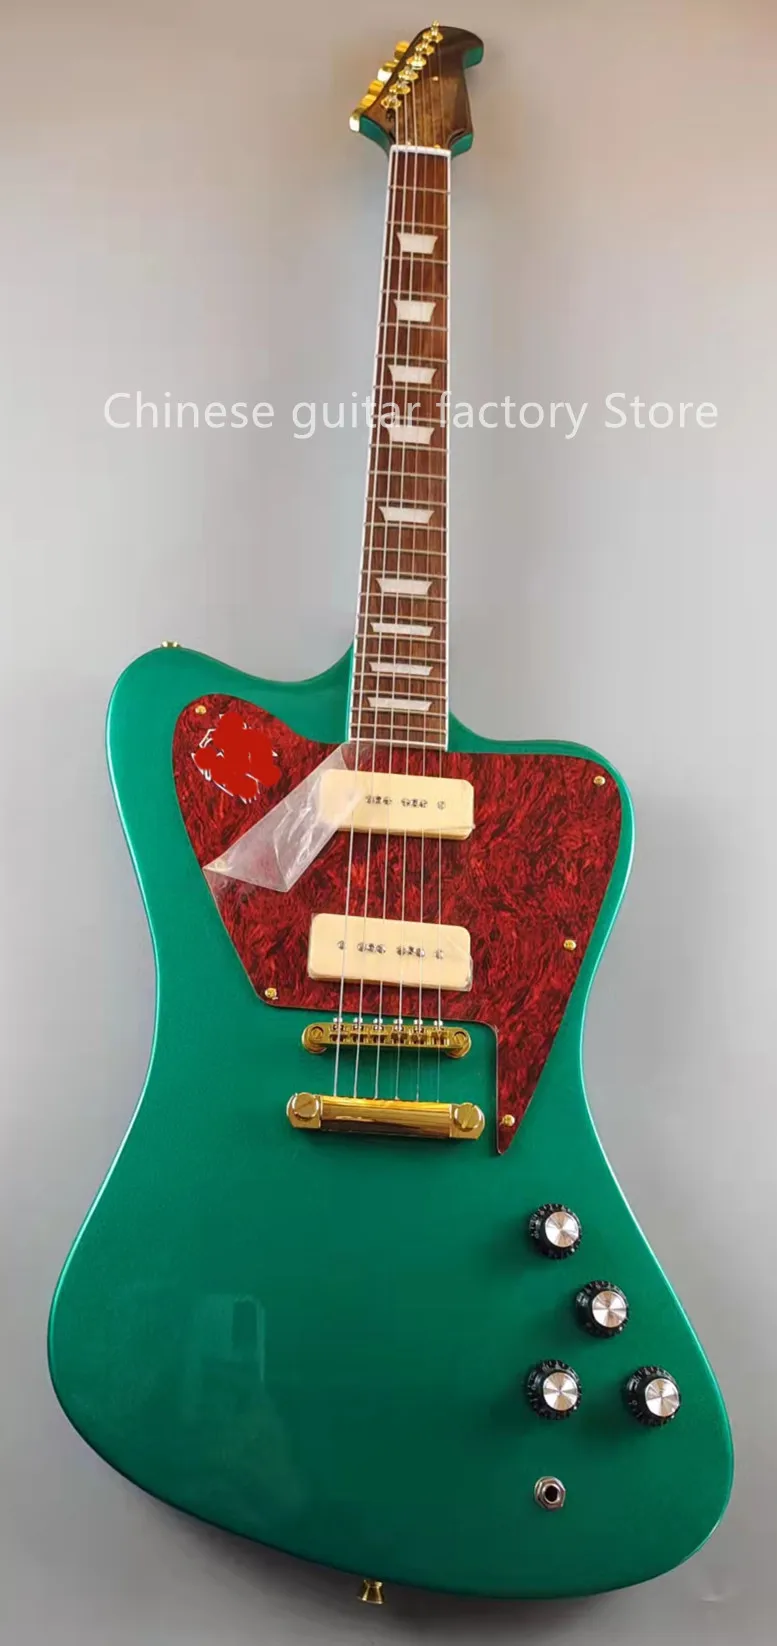 Kable Firebird Electric Gitara SilverGreen Flashes Złote Akcesoria P90 Pickupy MAHOGANY SPRZEDAŻ W STOPA BEZPŁATNĄ WYSYŁKA FA